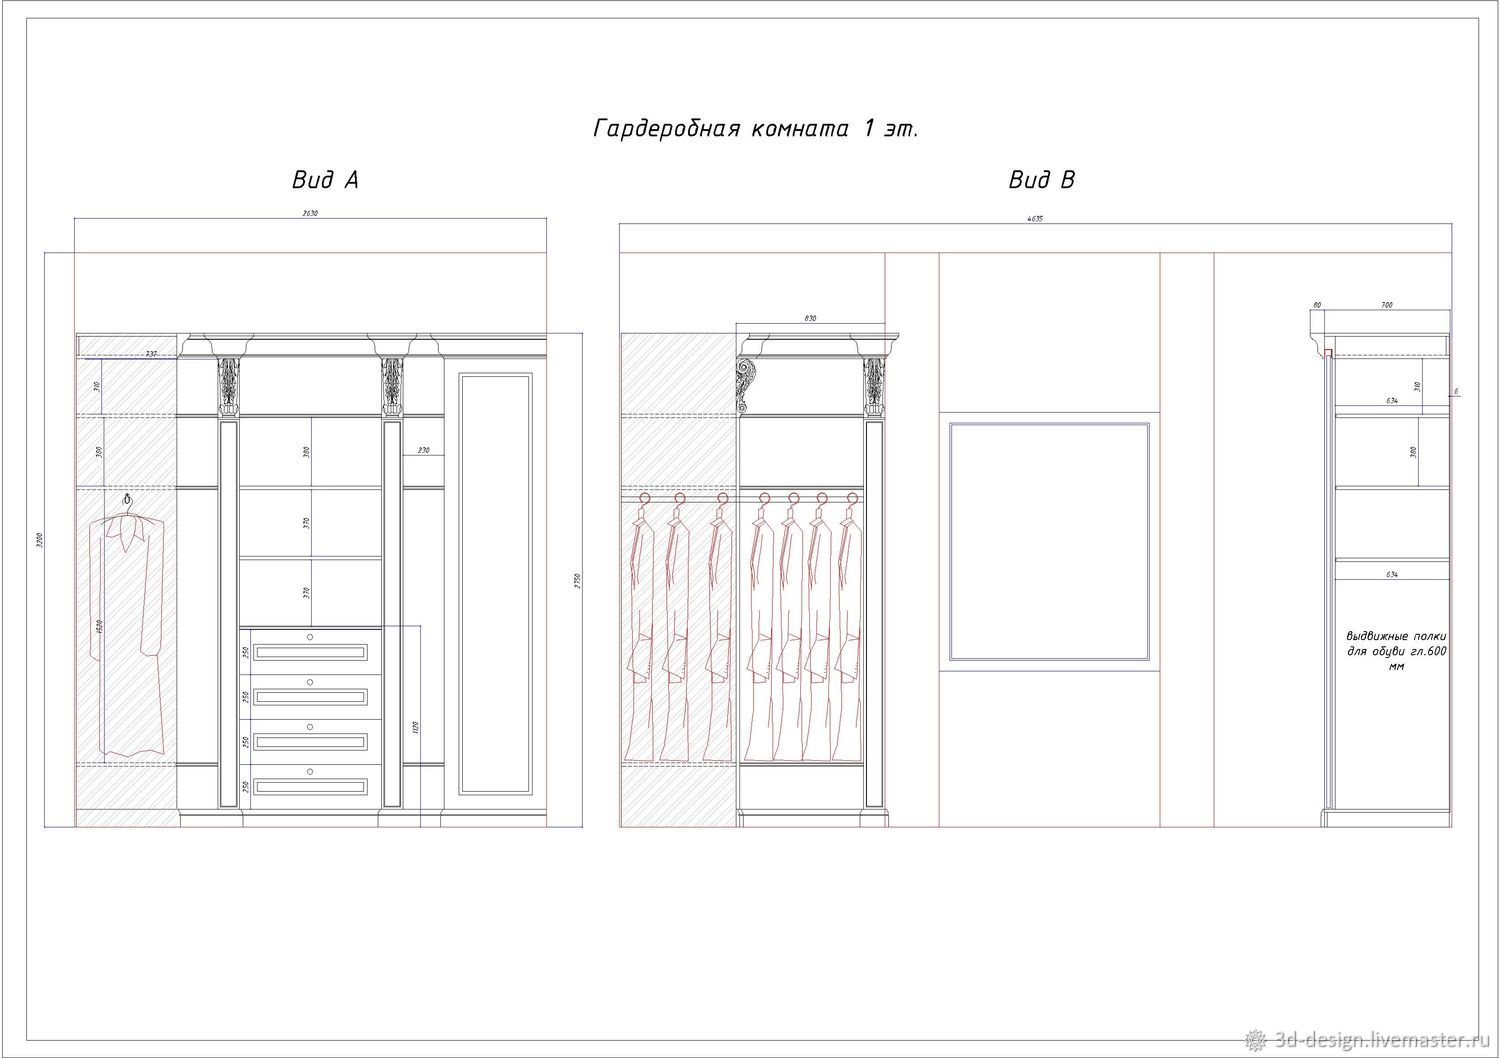 Размеры гардеробных комнат планировка компоновка